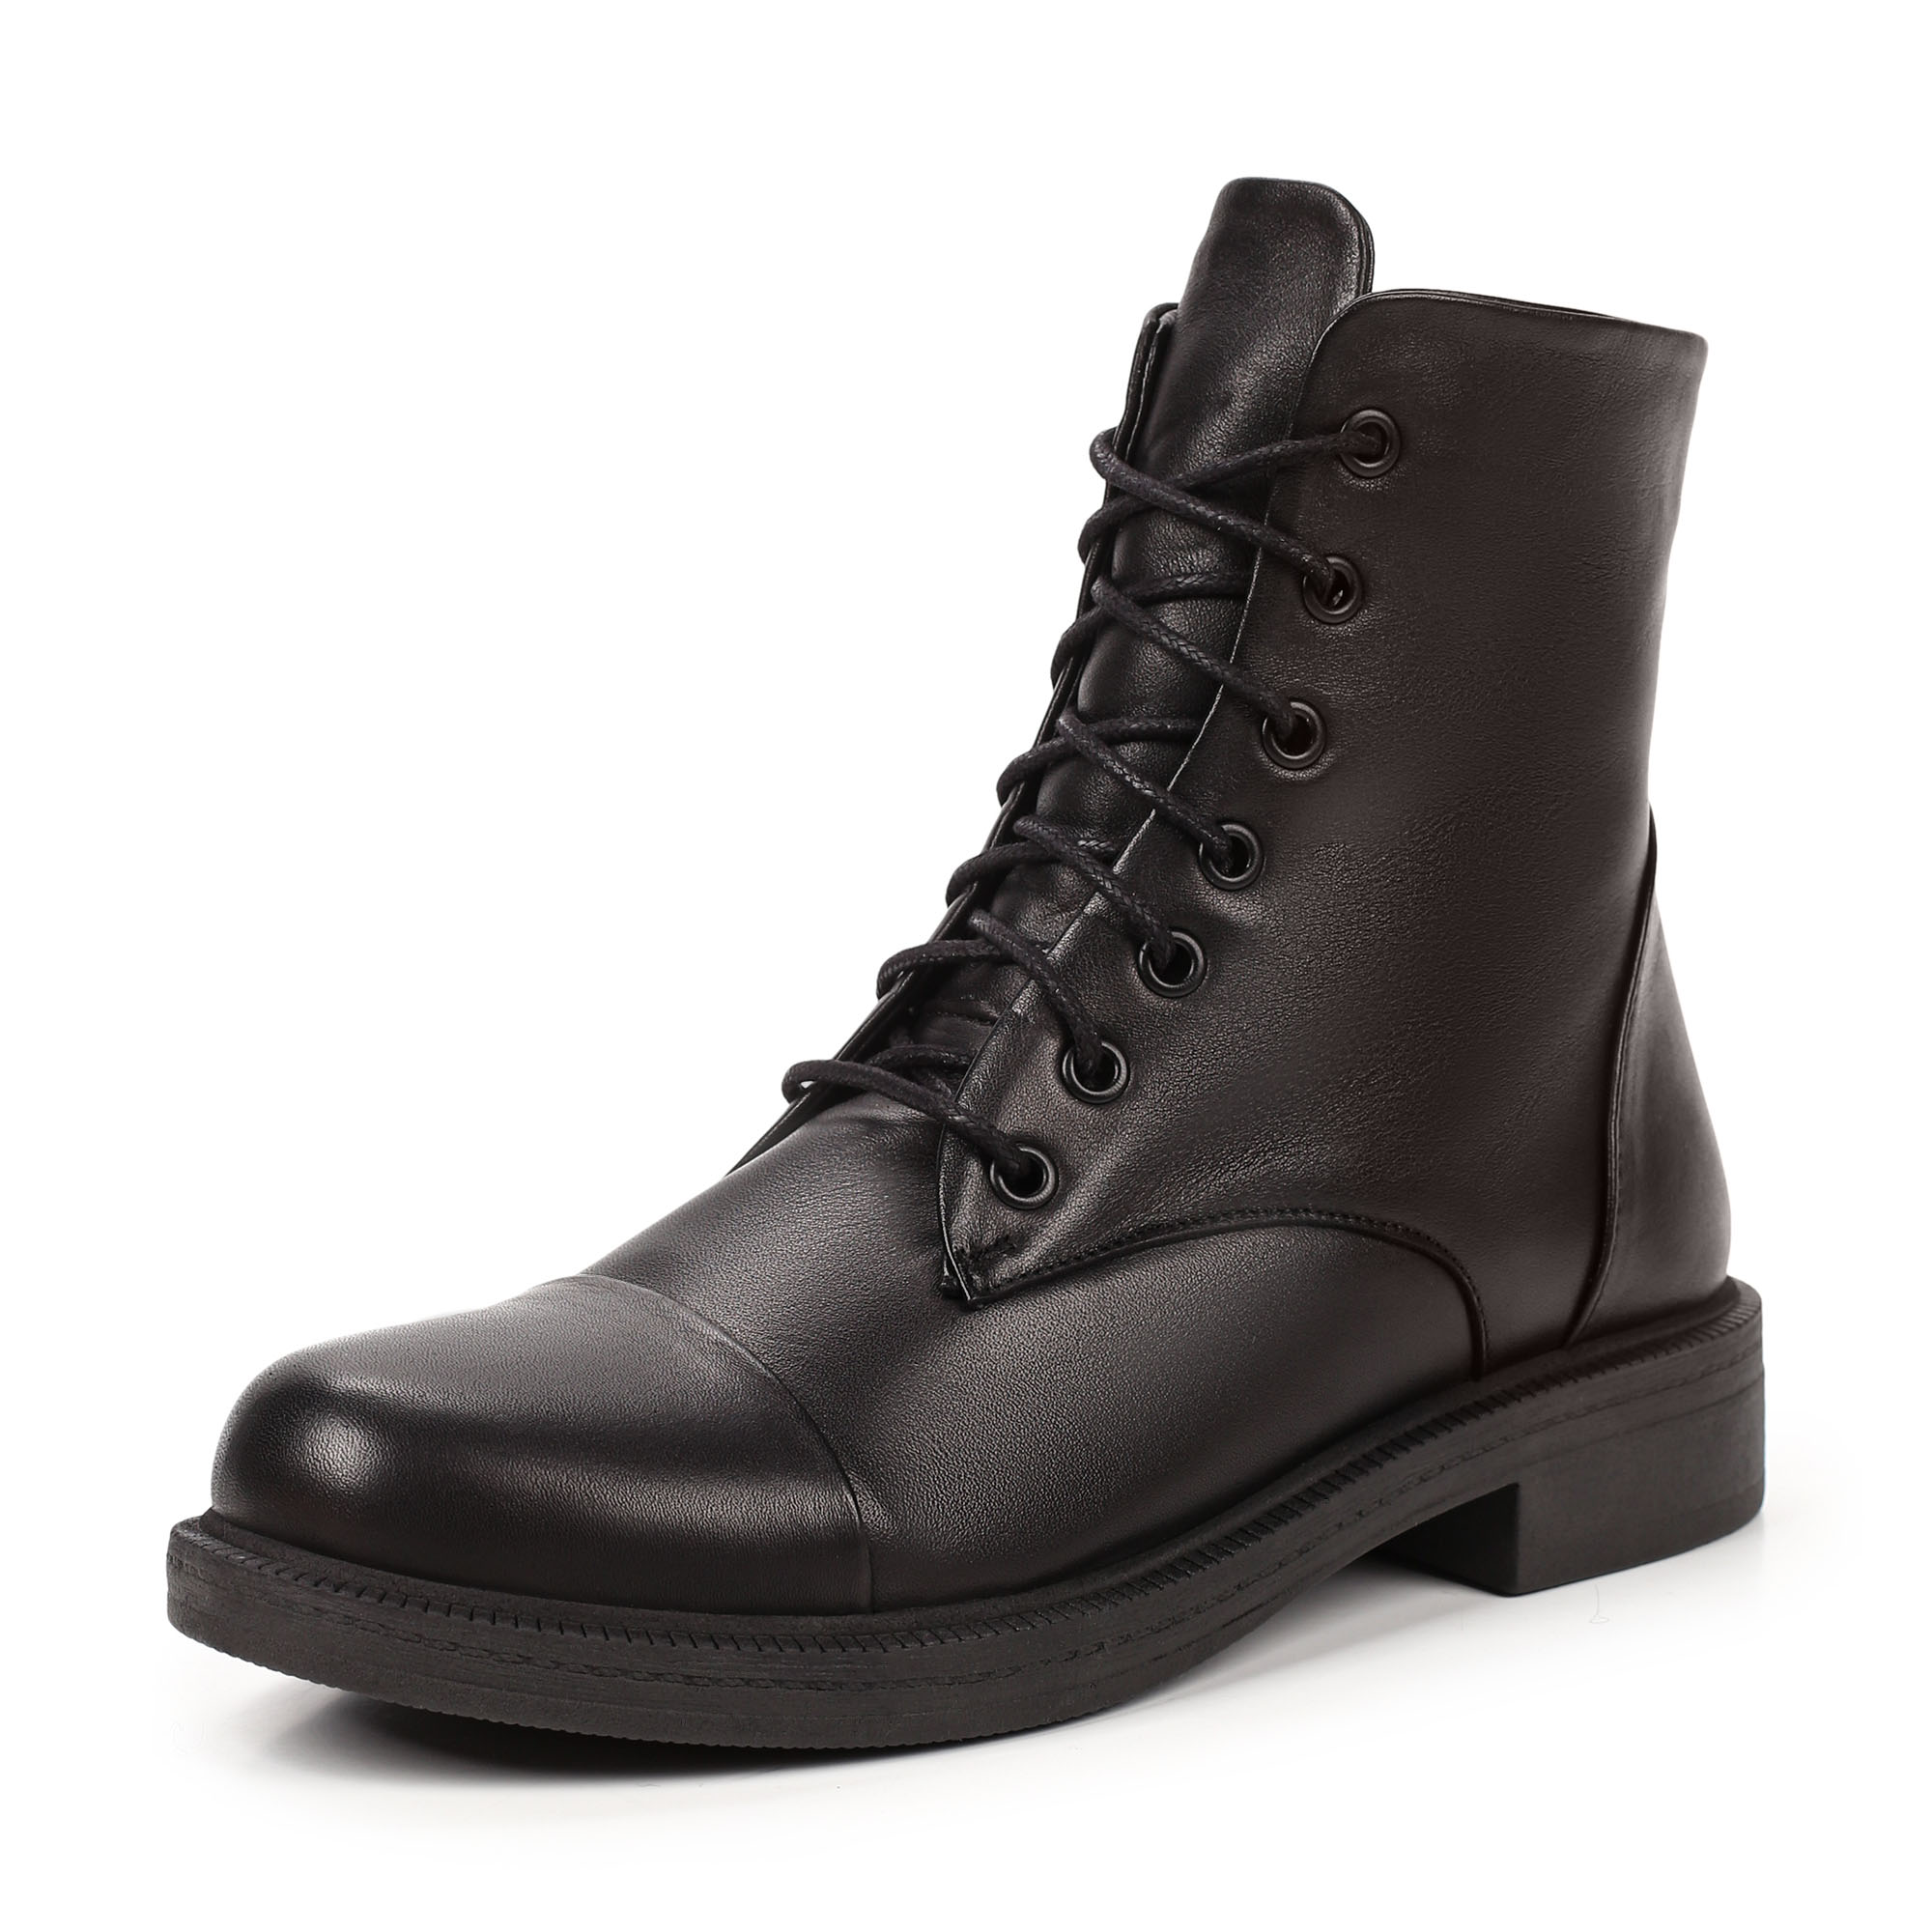 Ботинки Thomas Munz 539-010A-5102, цвет черный, размер 38 - фото 2